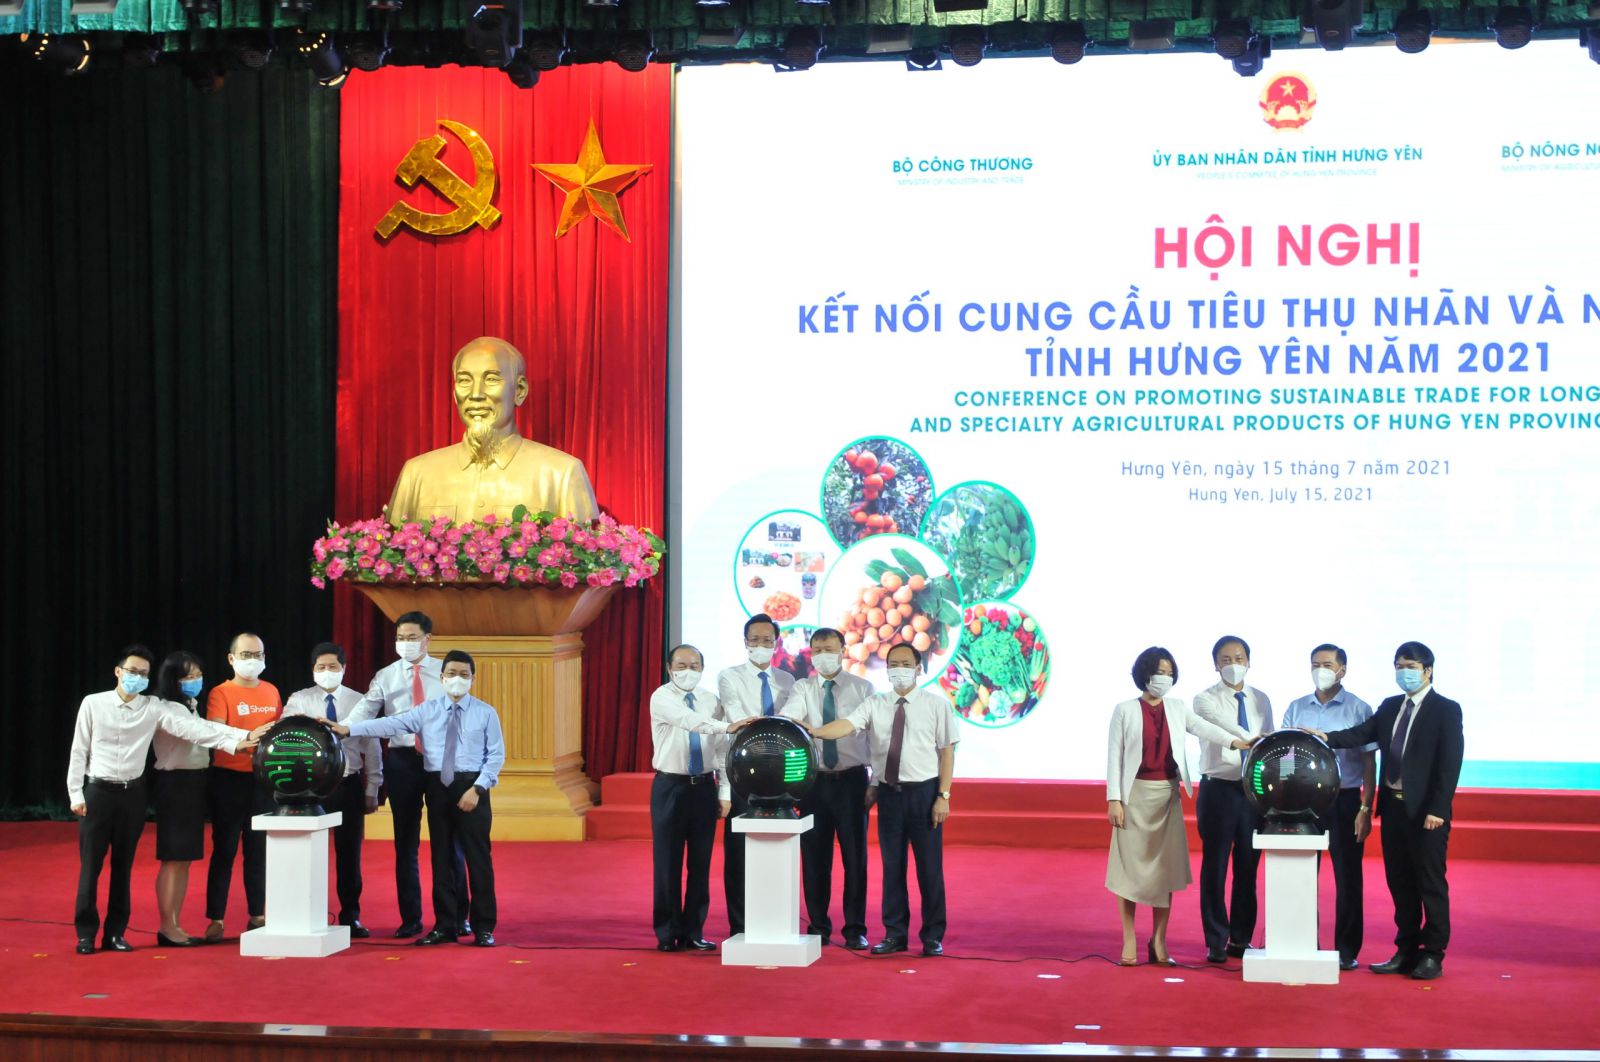 Hội nghị trực tuyến kết nối cung cầu tiêu thụ nhãn và nông sản của tỉnh Hưng Yên diễn ra sáng ngày 15/07